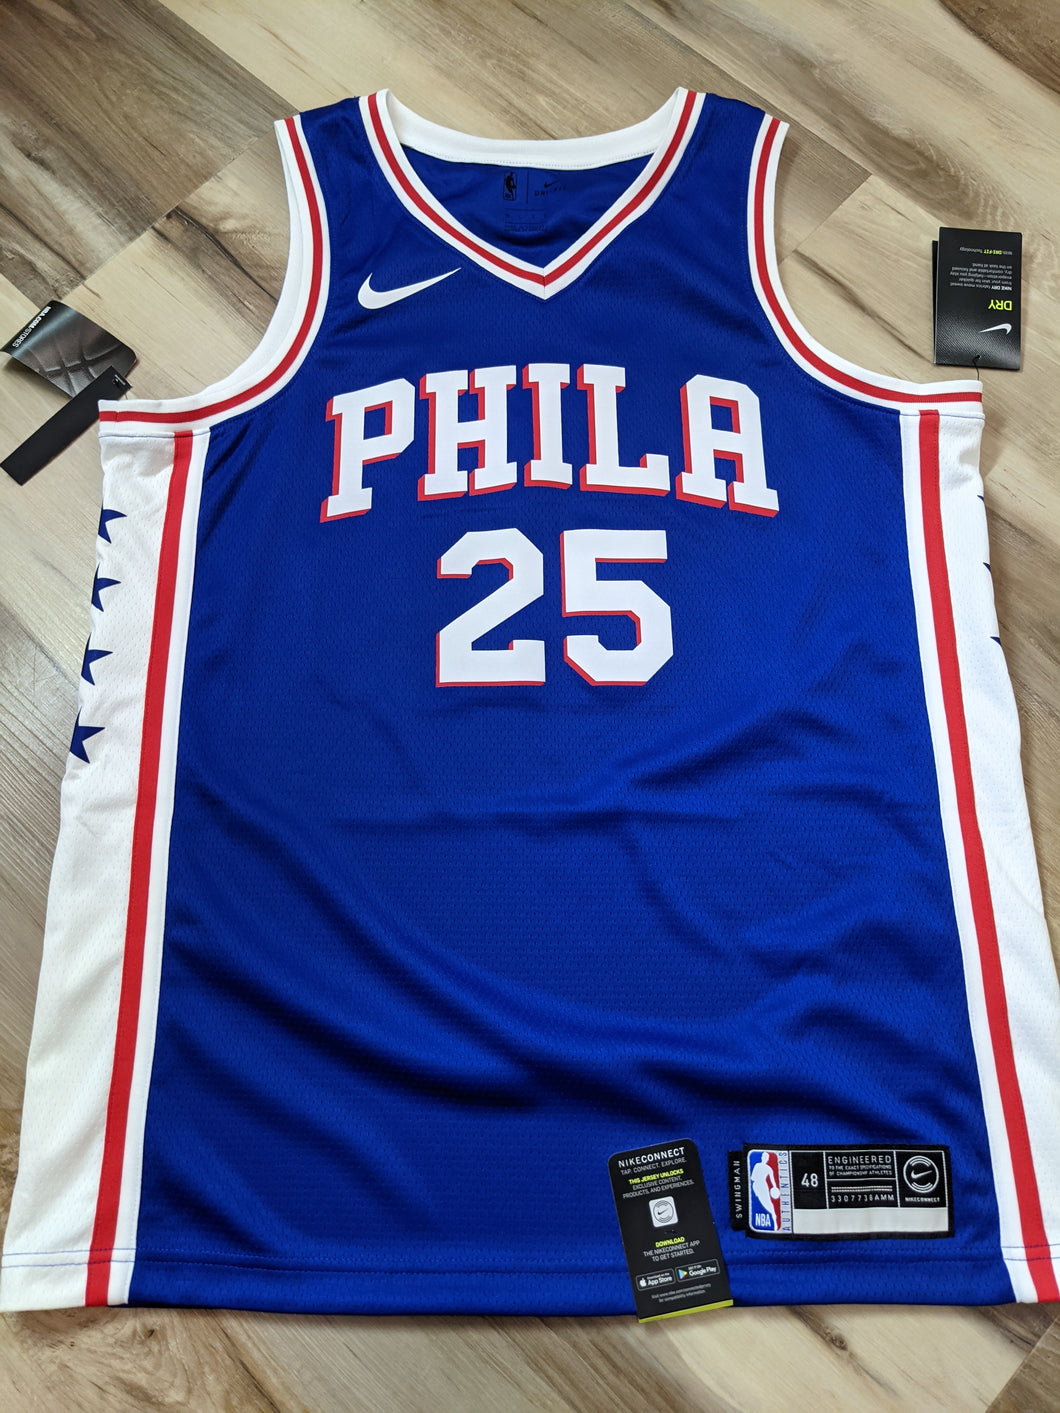 Collector's Jersey - Ben Simmons Philadelphia 76ers